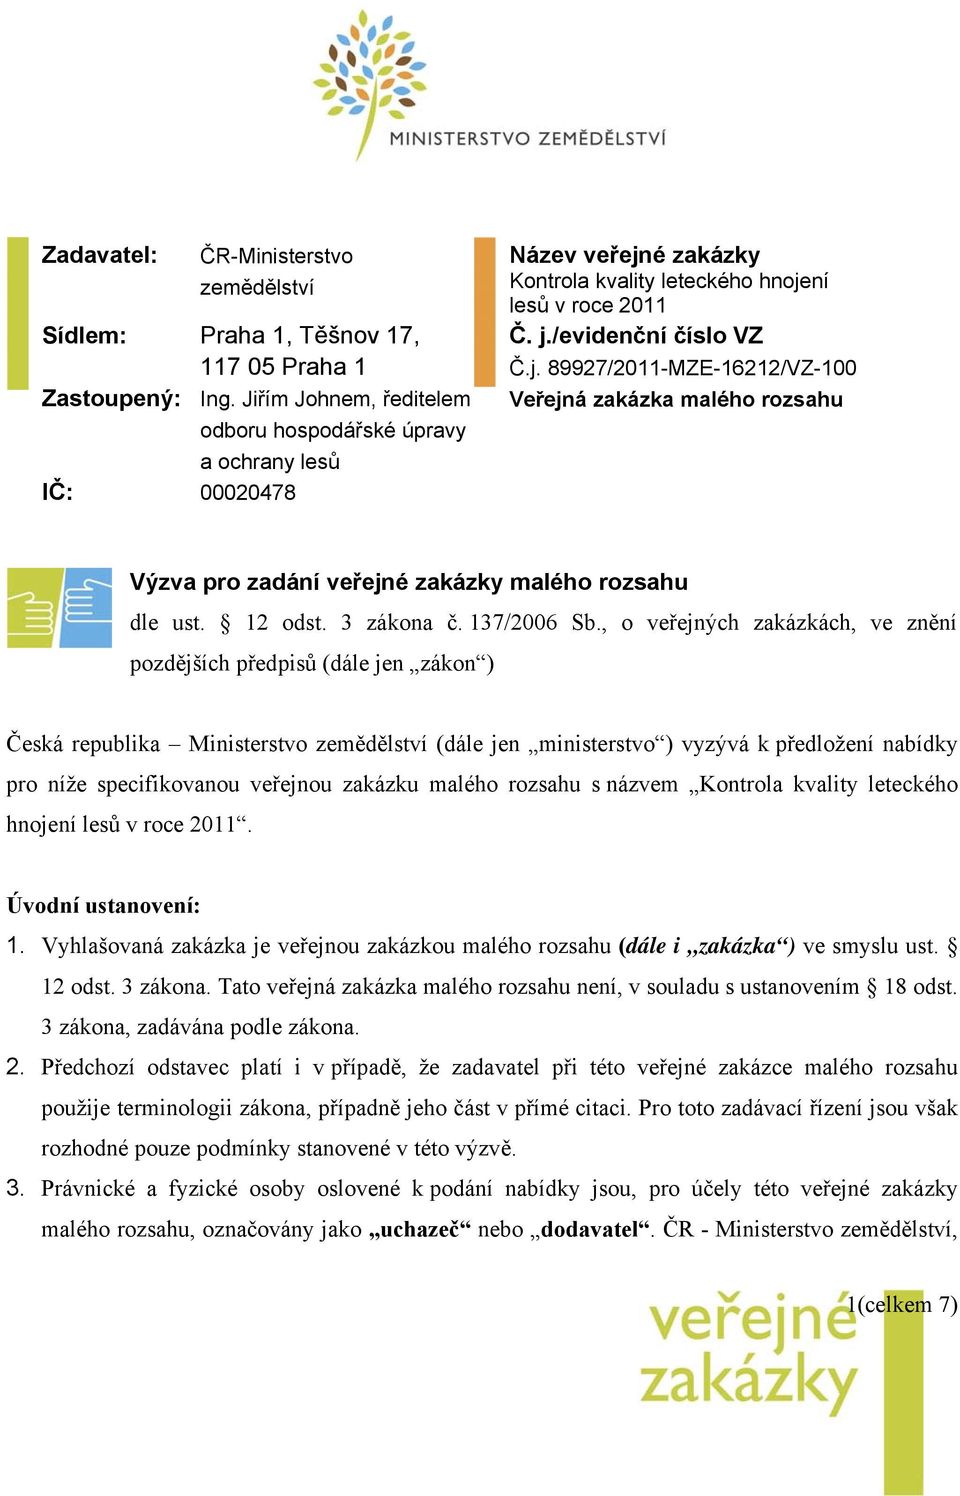 é zakázky Kontrola kvality leteckého hnojení lesů v roce 2011 Č. j./evidenční číslo VZ Č.j. 89927/2011-MZE-16212/VZ-100 Veřejná zakázka malého rozsahu Výzva pro zadání veřejné zakázky malého rozsahu dle ust.